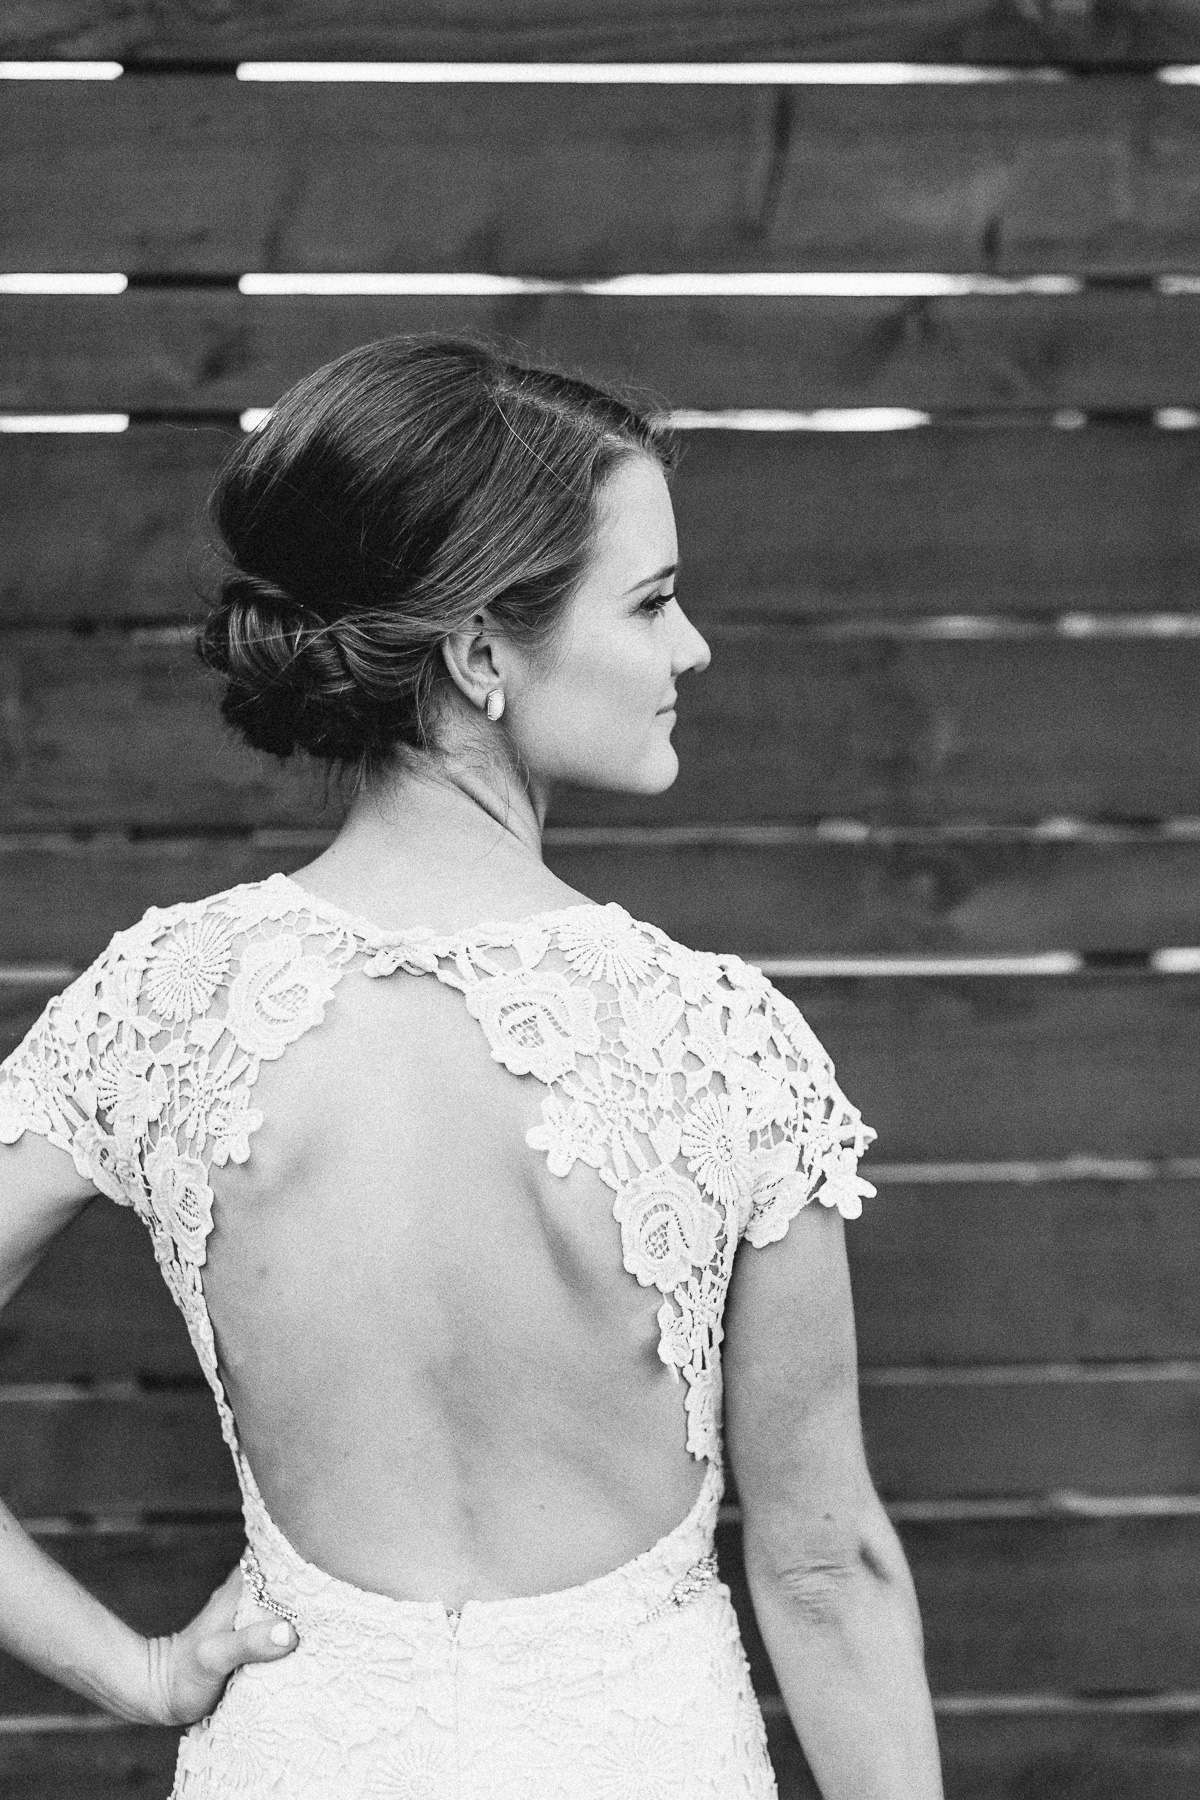 Back of bride's dress